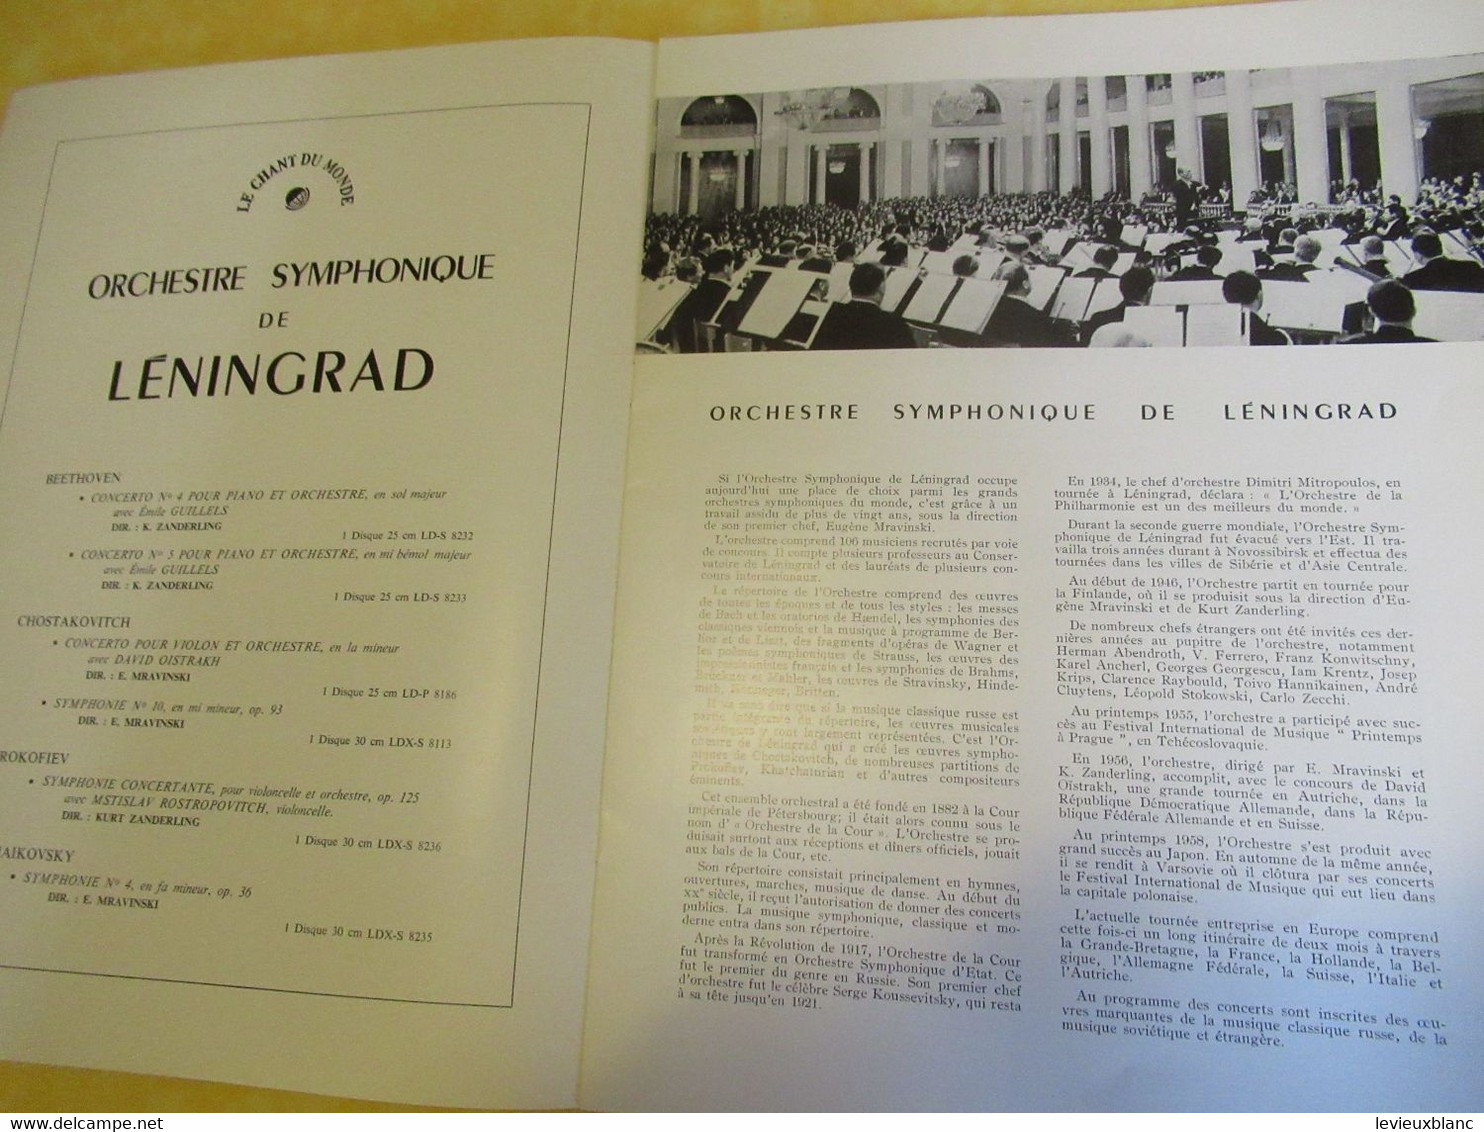 Programme Ancien/Musique/ Orchestre Symphonique De LENINGRAD/Théâtre National Du Palais De Chaillot/1960    PROG356 - Programma's